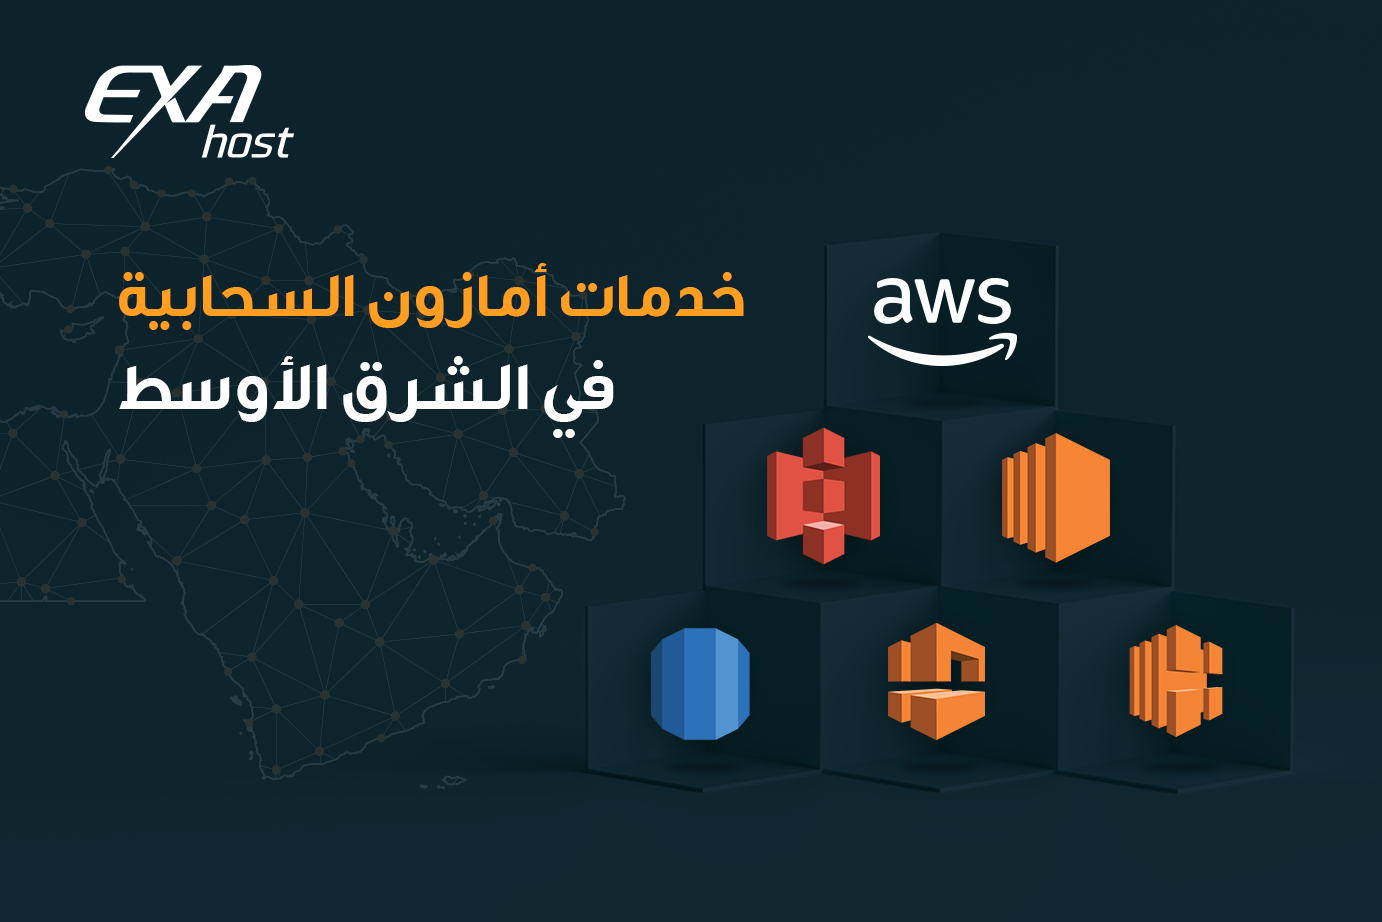 خدمات أمازون ويب سيرفيسز المتوفرة في الشرق الأوسط البحرين الحوسبة السحابية التحول الرقمي aws cloud Digital Transformation cloud computing